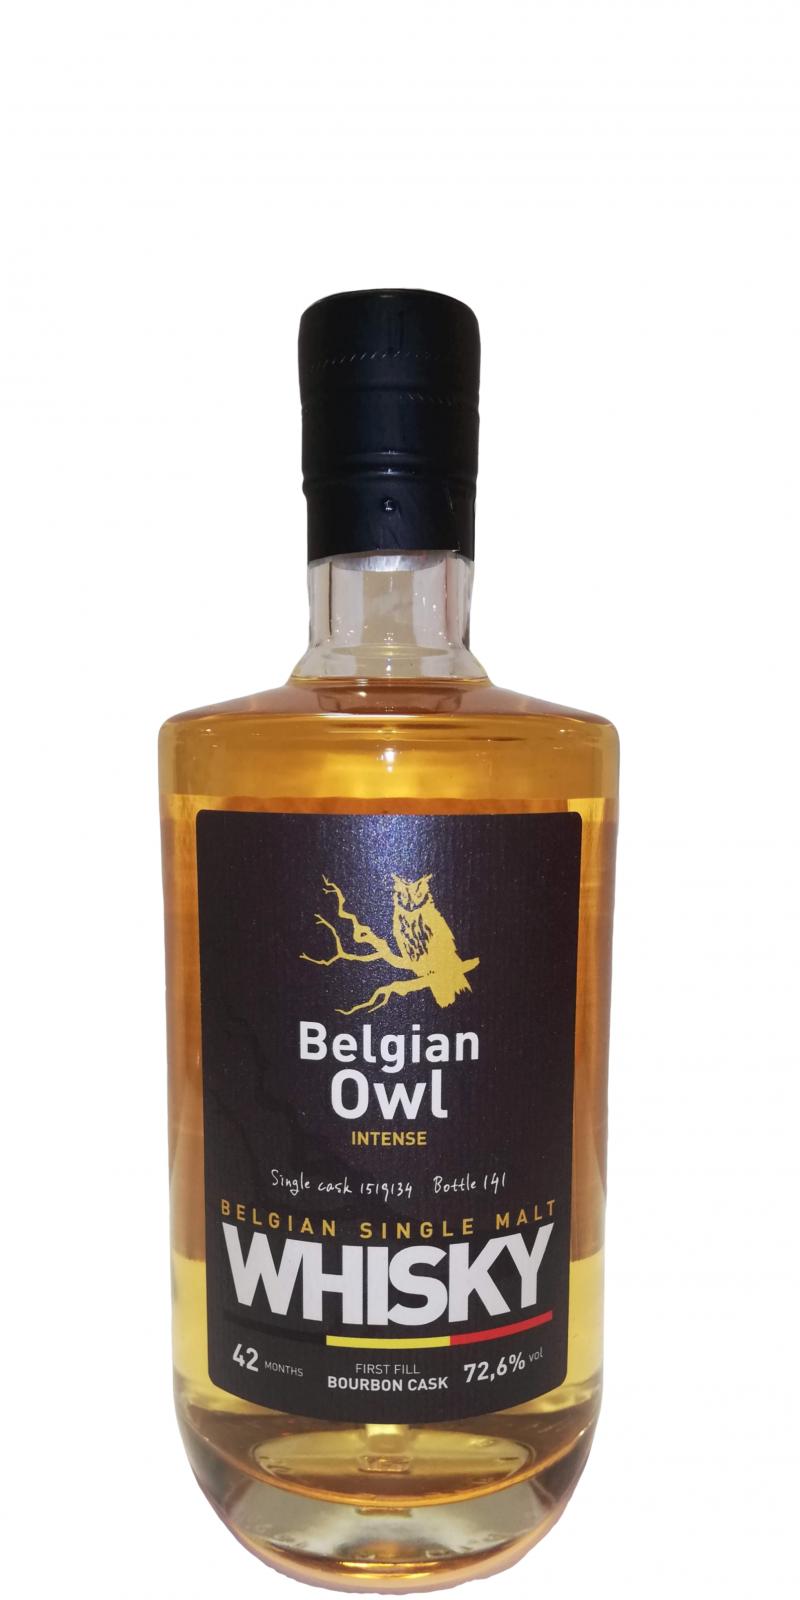 The Belgian Owl 42 months Intense First Fill Bourbon Cask #1519134 72.6% 500ml